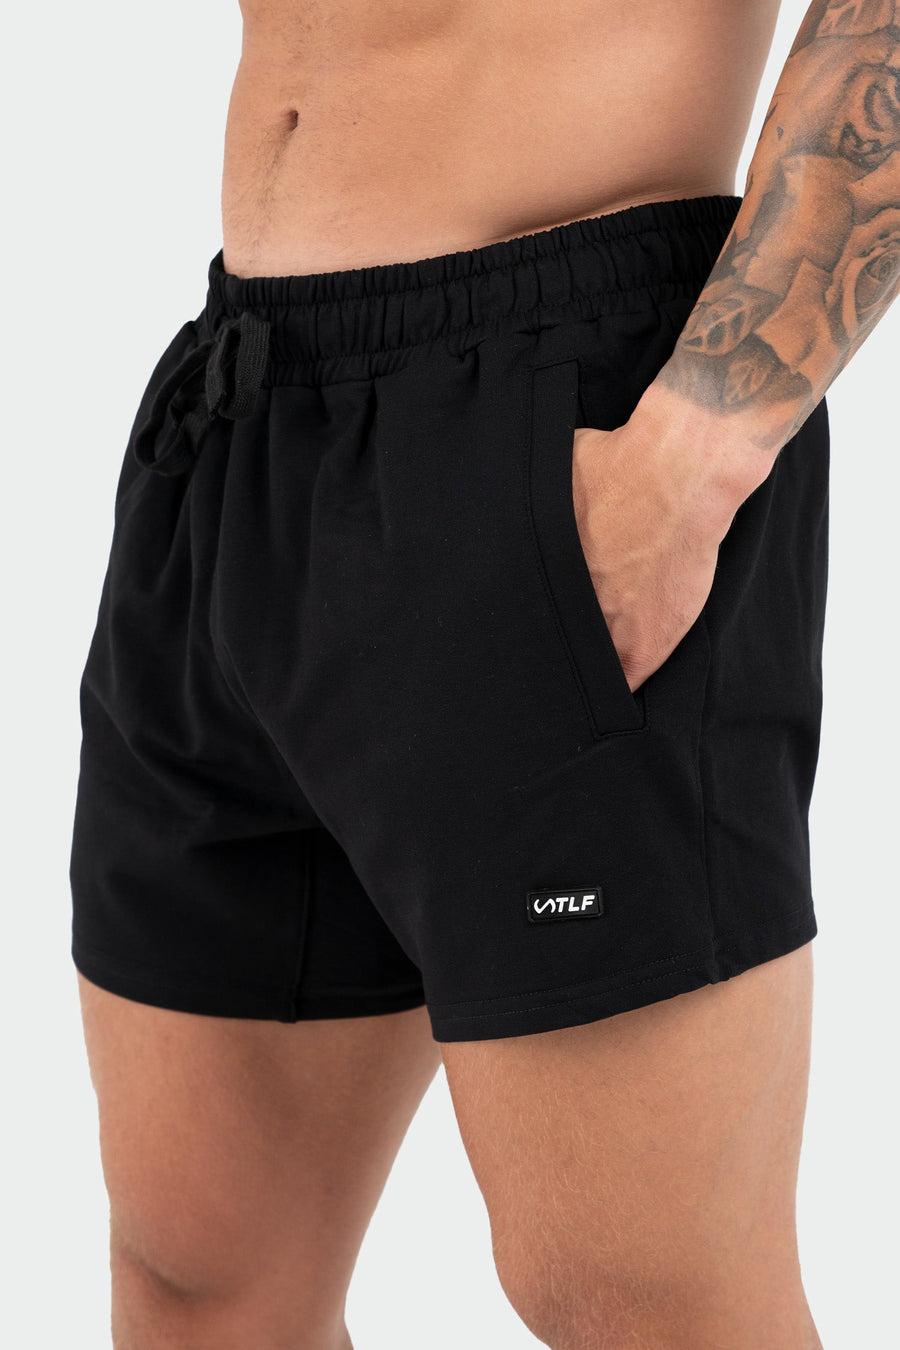 TLF Varsity 5” Shorts - Men’s 5 Inch inseam Shorts - Black - 2